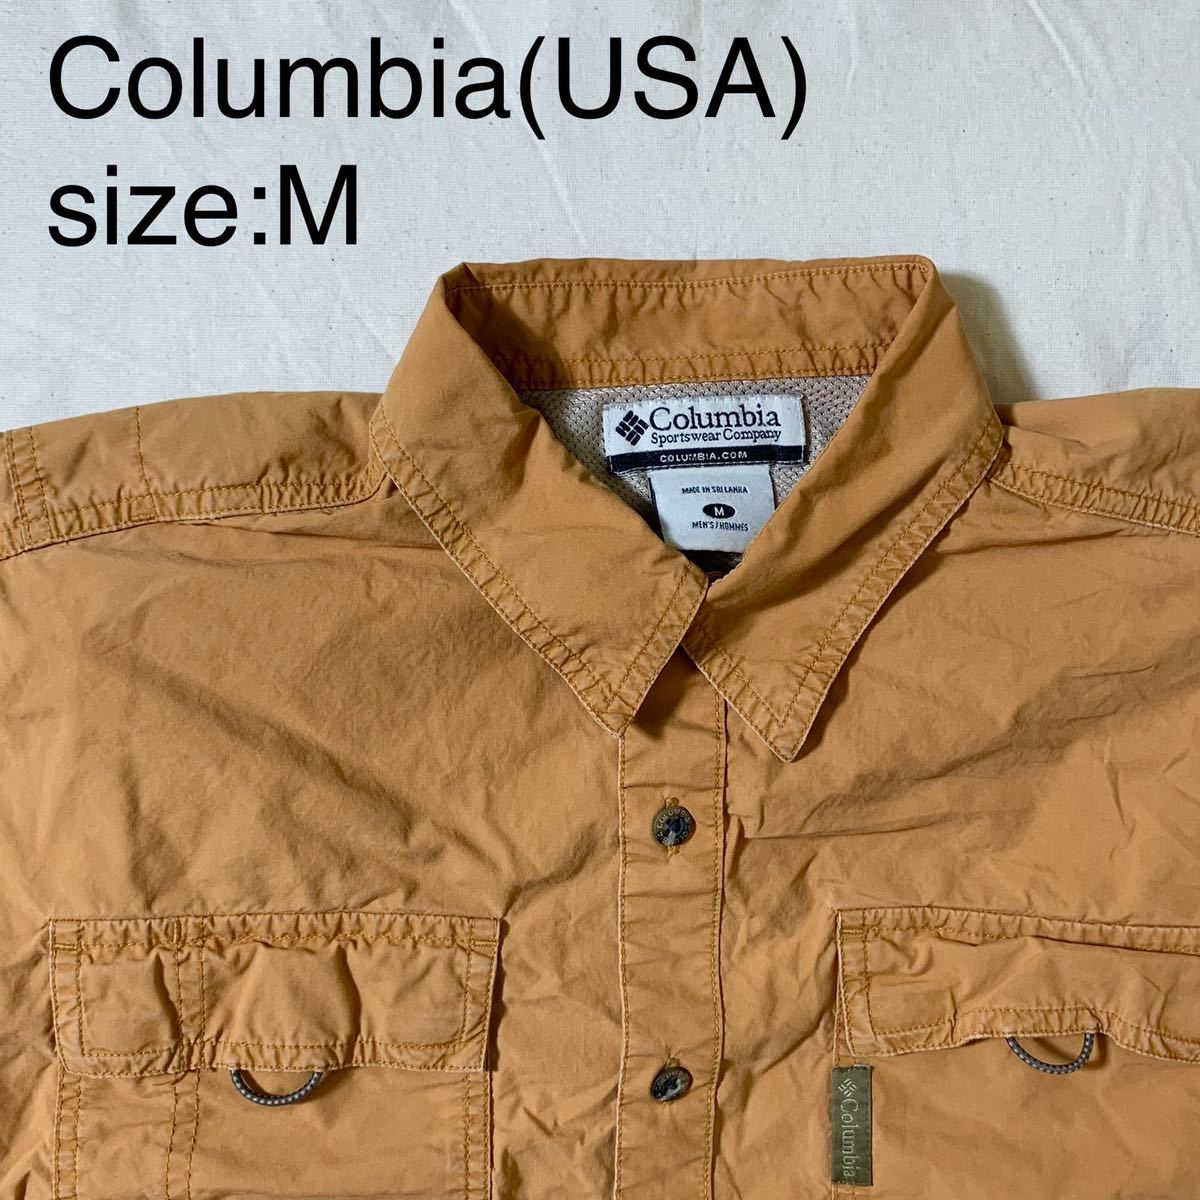 Columbia(USA)ビンテージフィッシングシャツ　オレンジ　Mのサムネイル